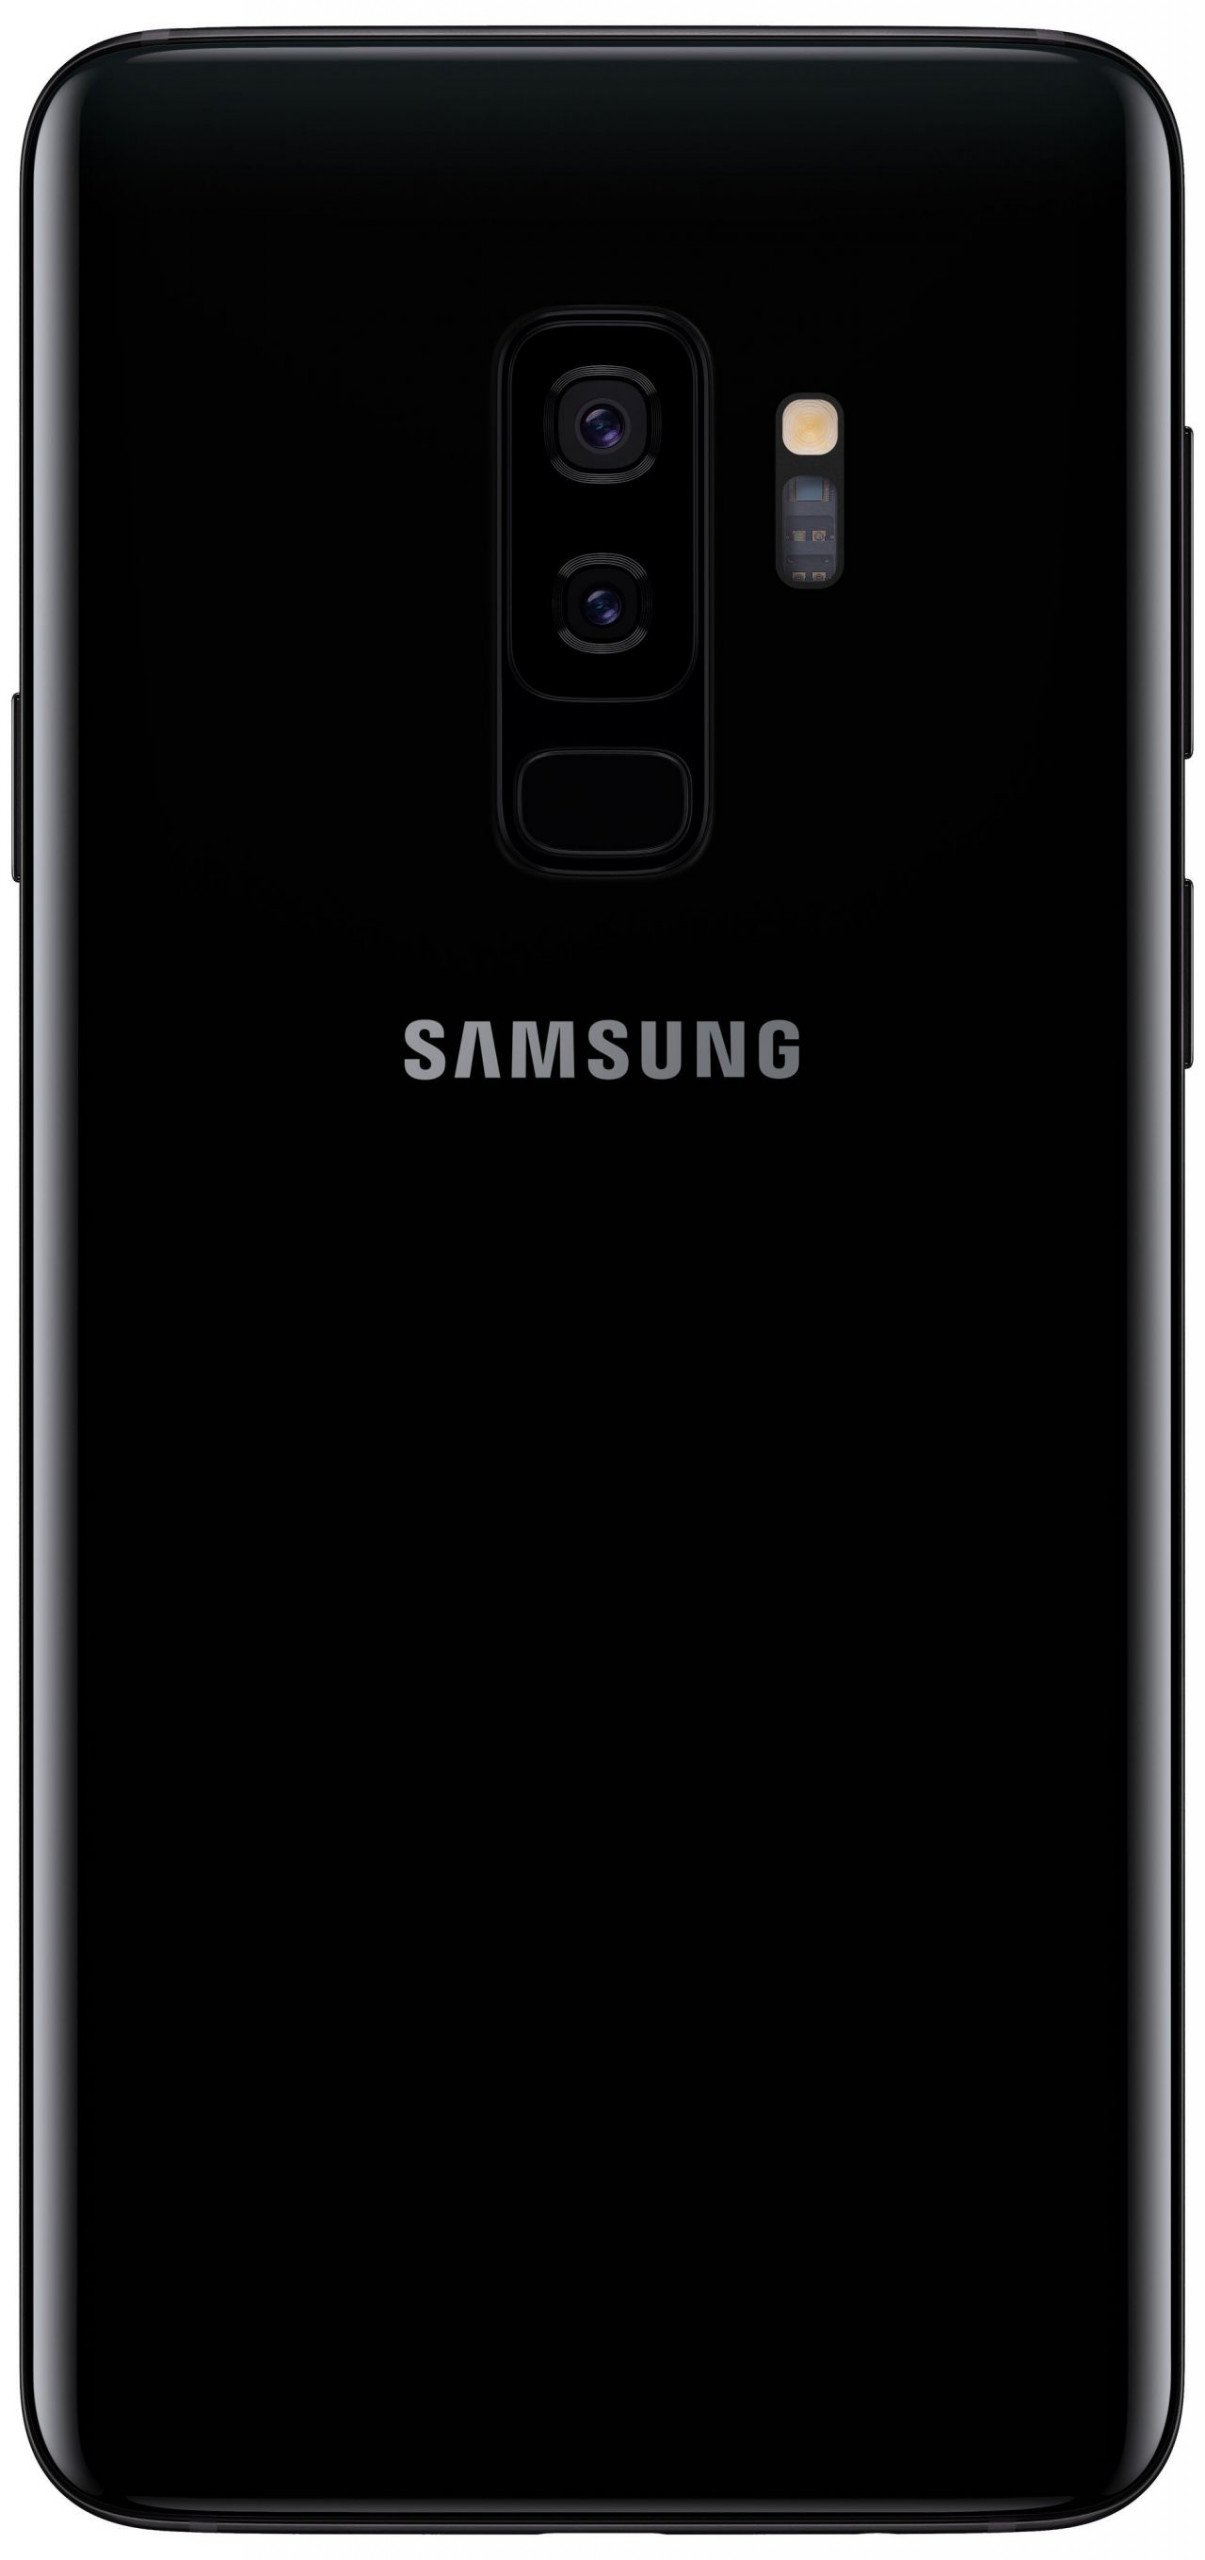 Samsung Galaxy S9 ve Galaxy S9+ Tasarımı